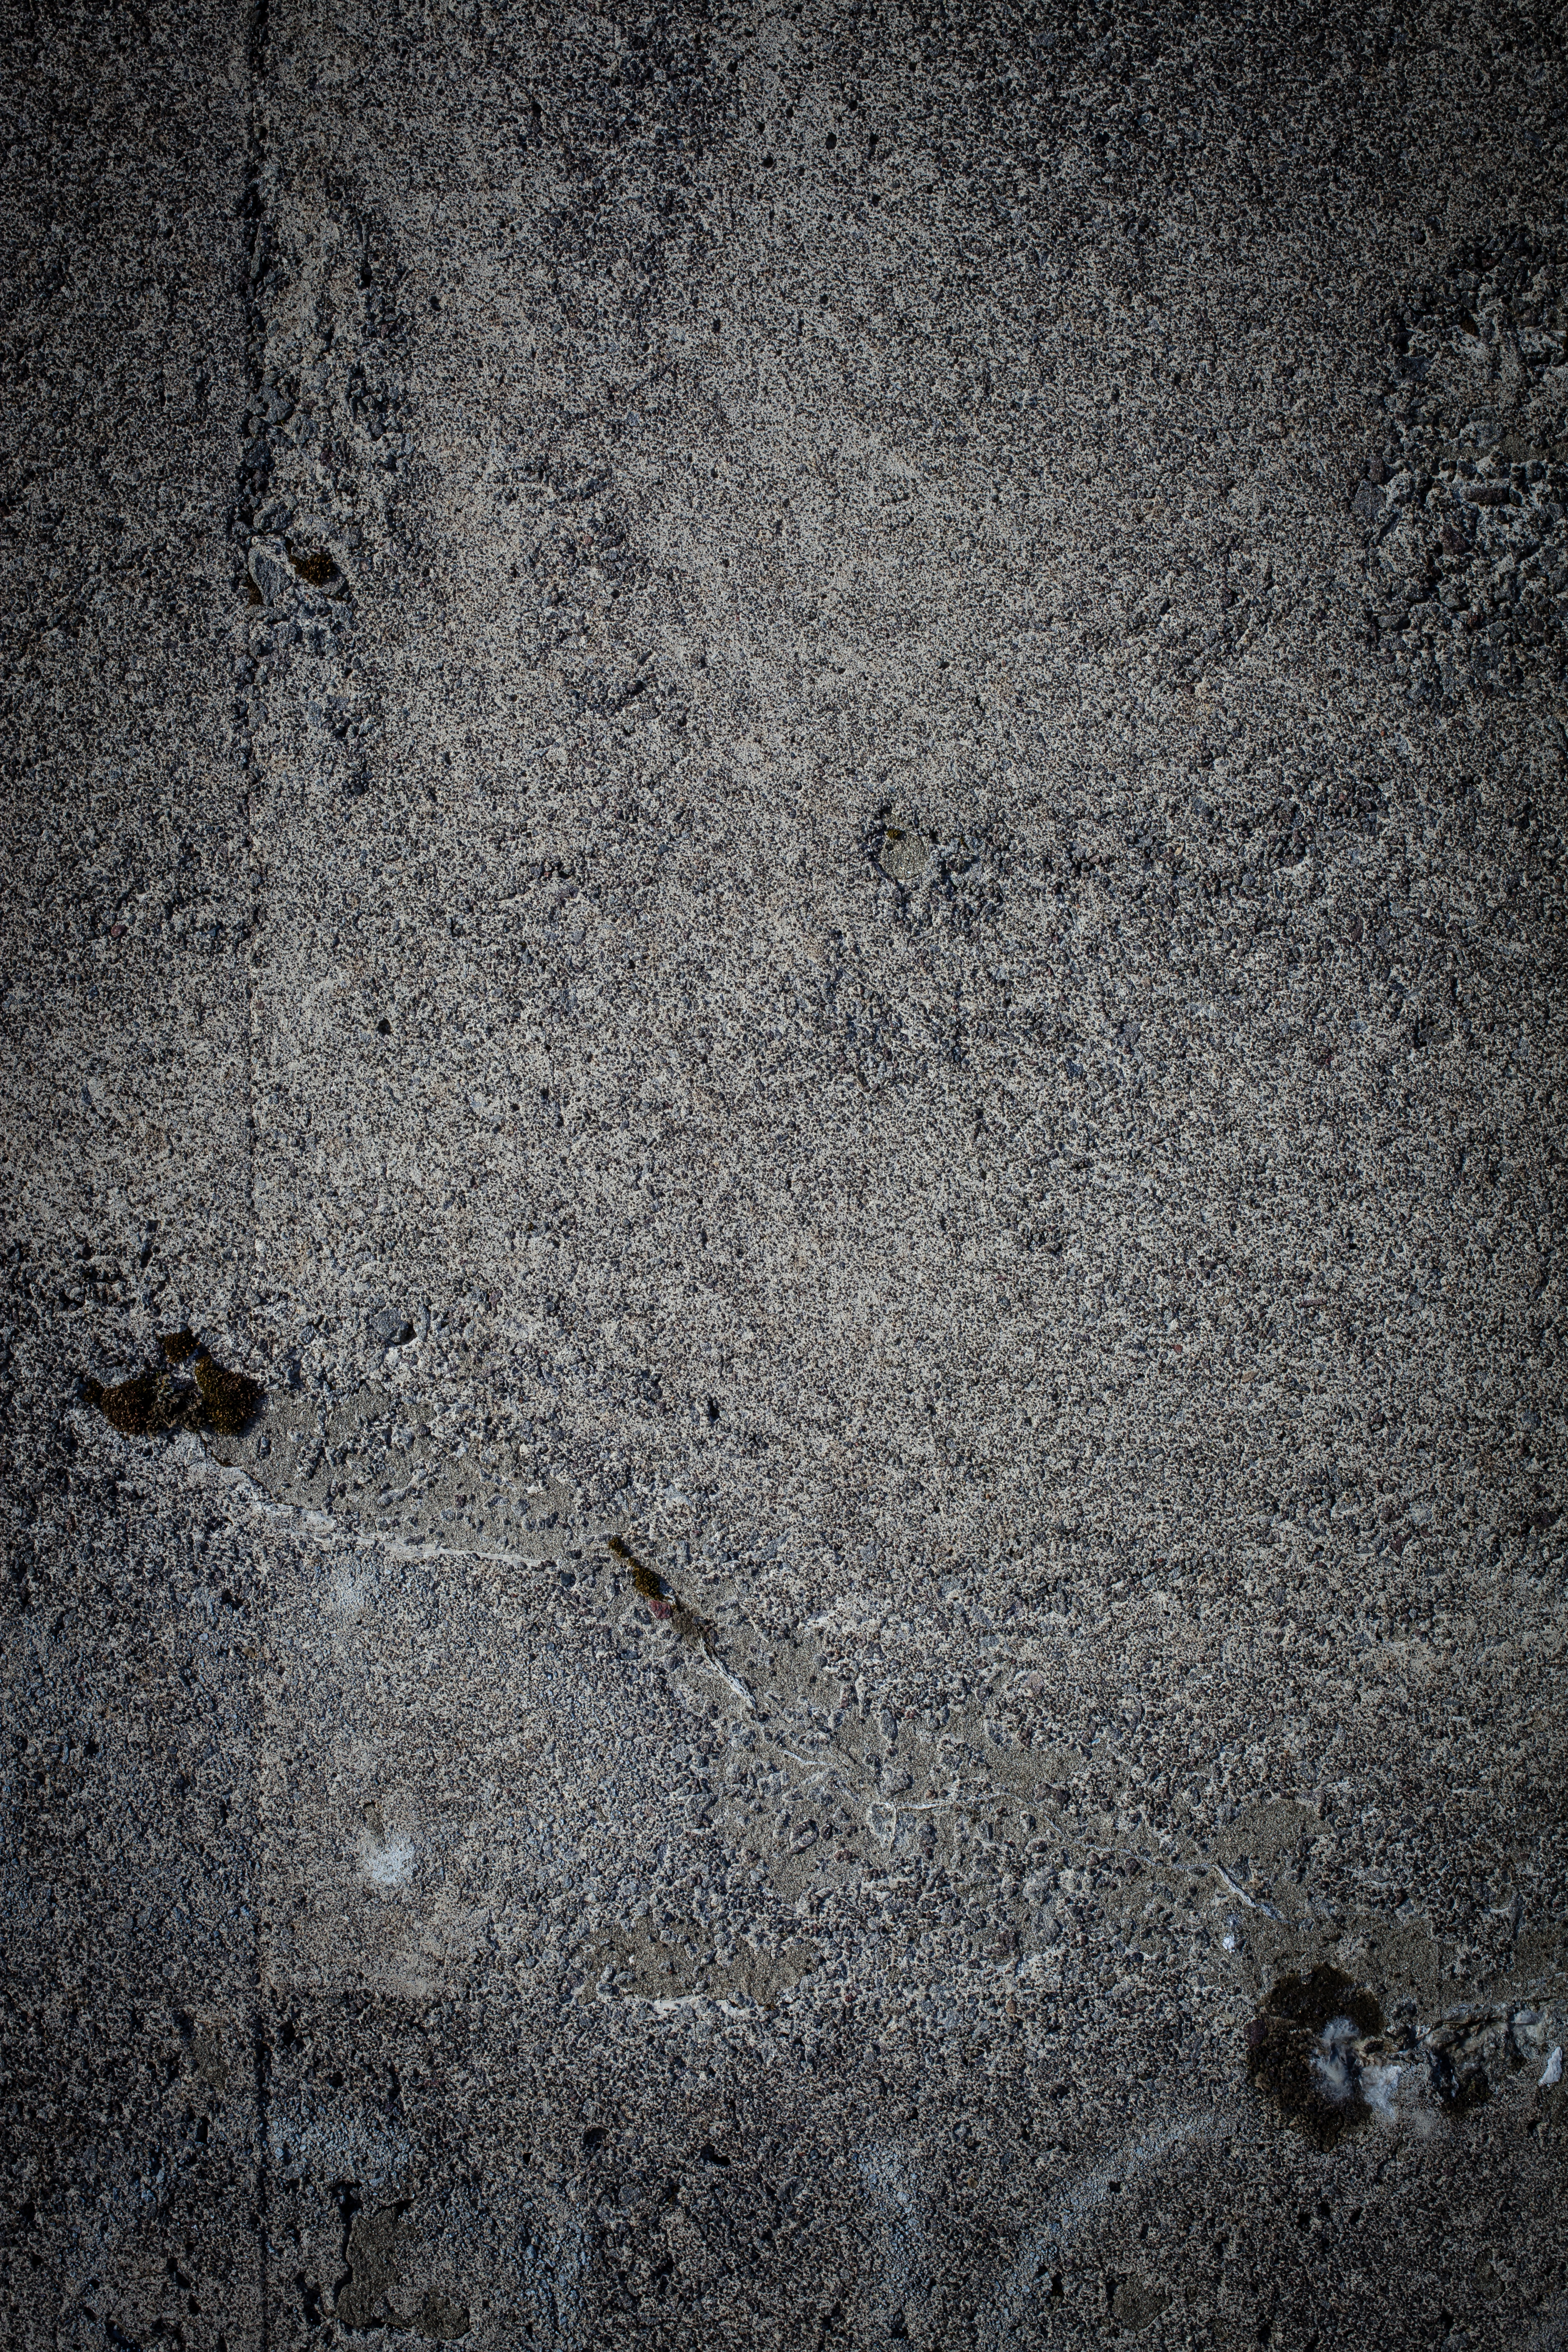 Cold plain concrete texture photo